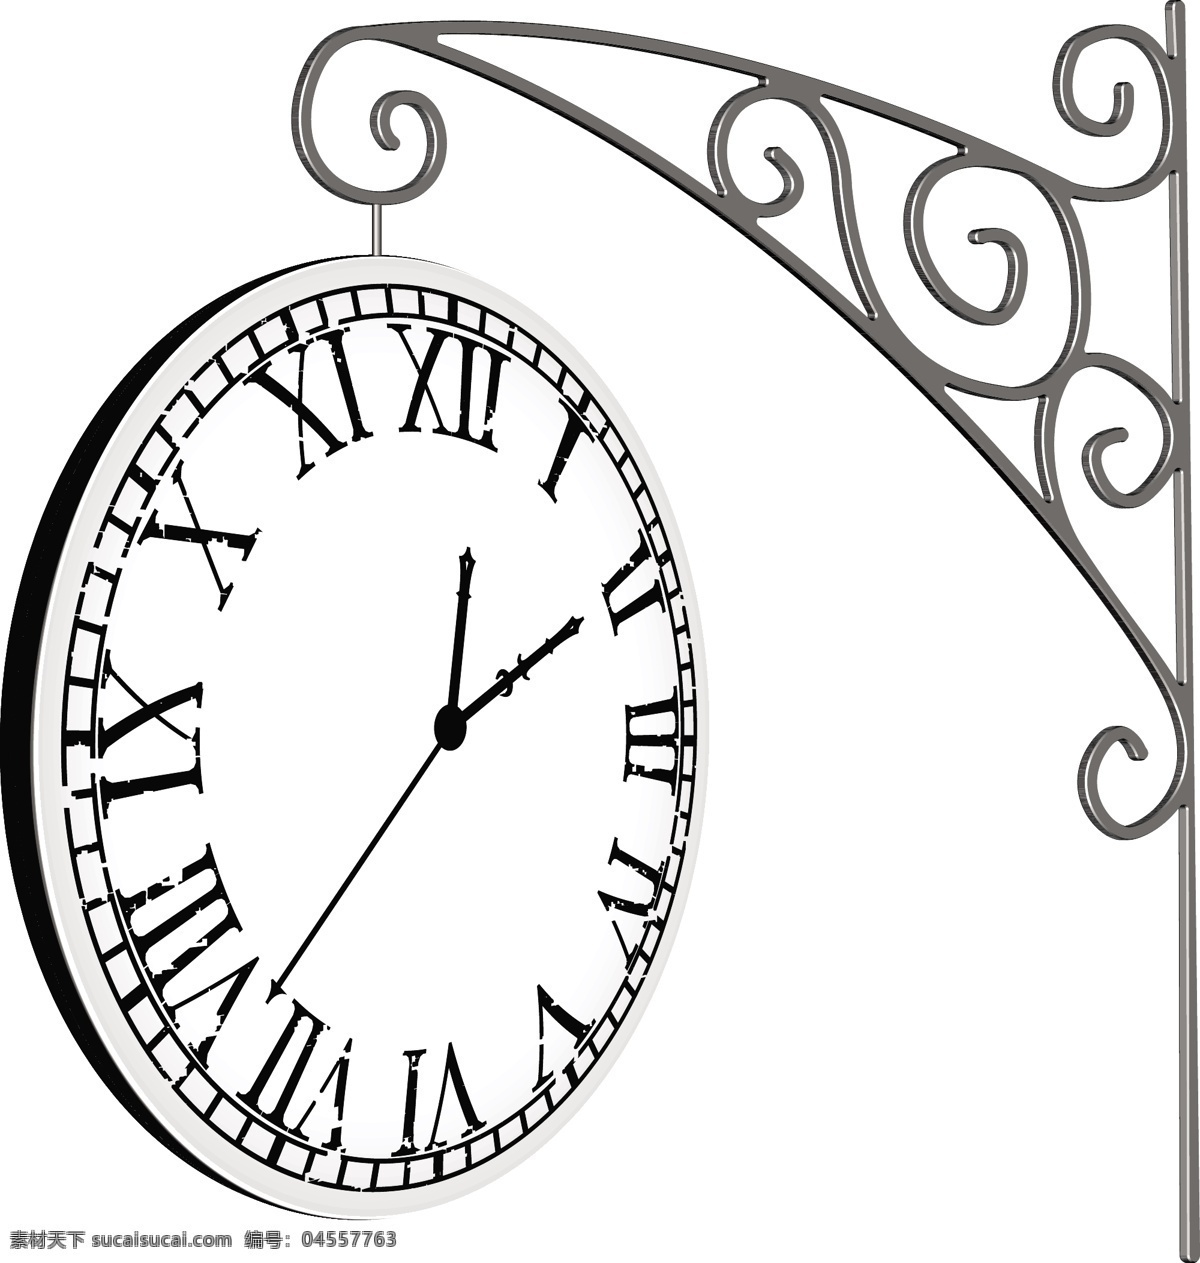 钟表 指针 挂钟 壁钟 表盘 秒表 时间 刻度 生活用品 生活百科 矢量